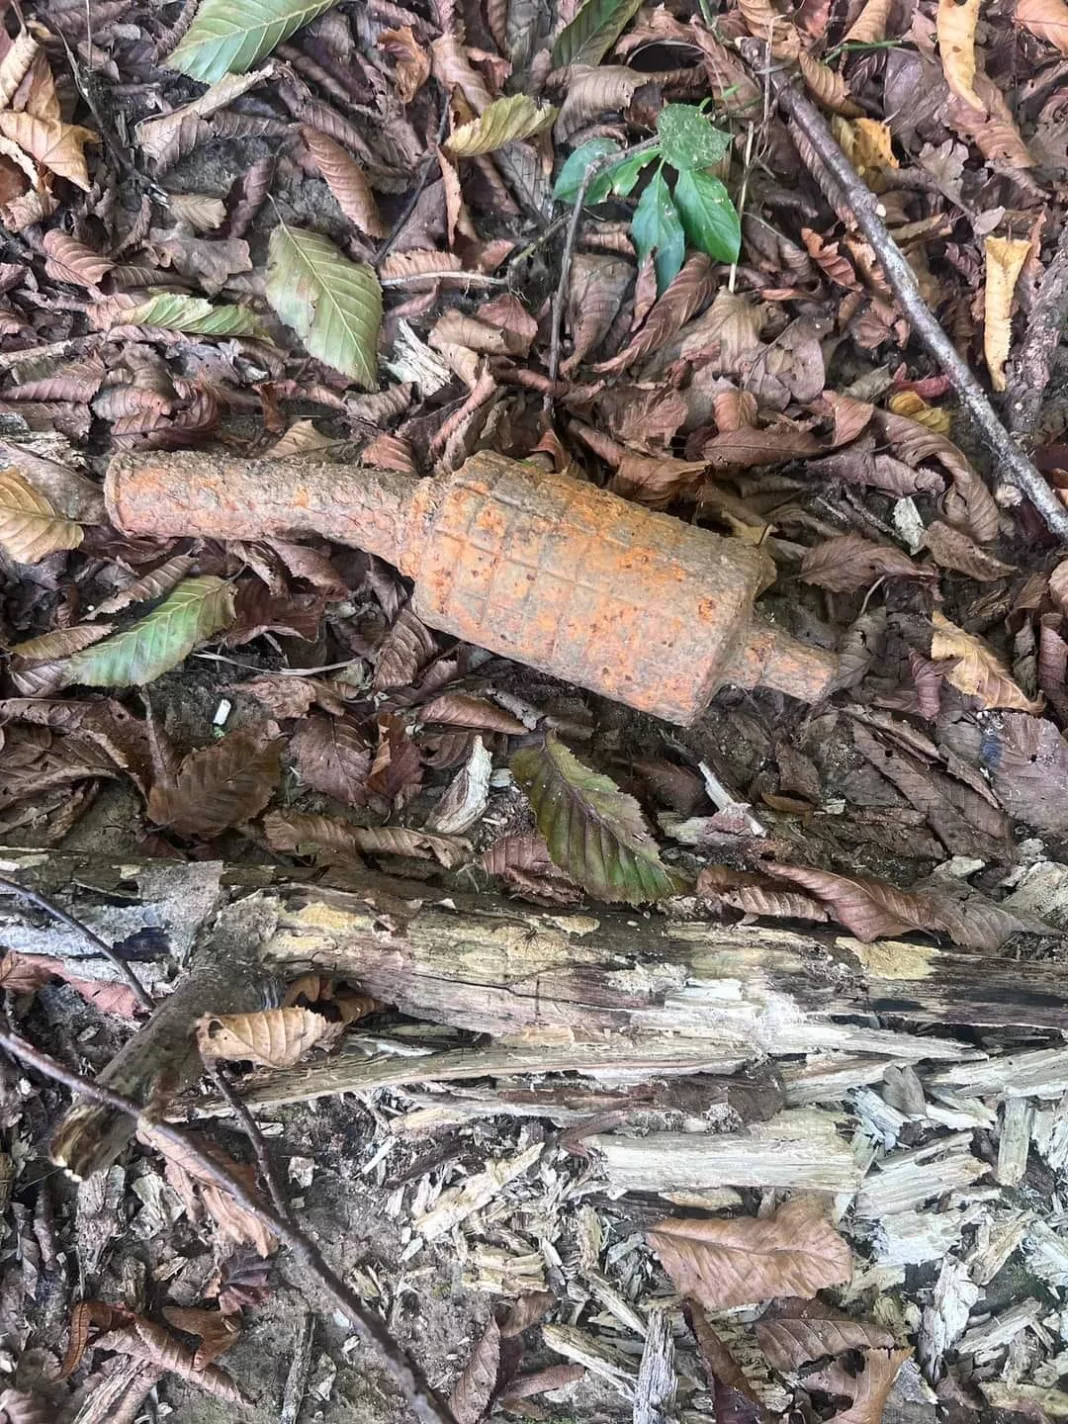 Grenadă defensivă găsită într-o pădure din Arcani